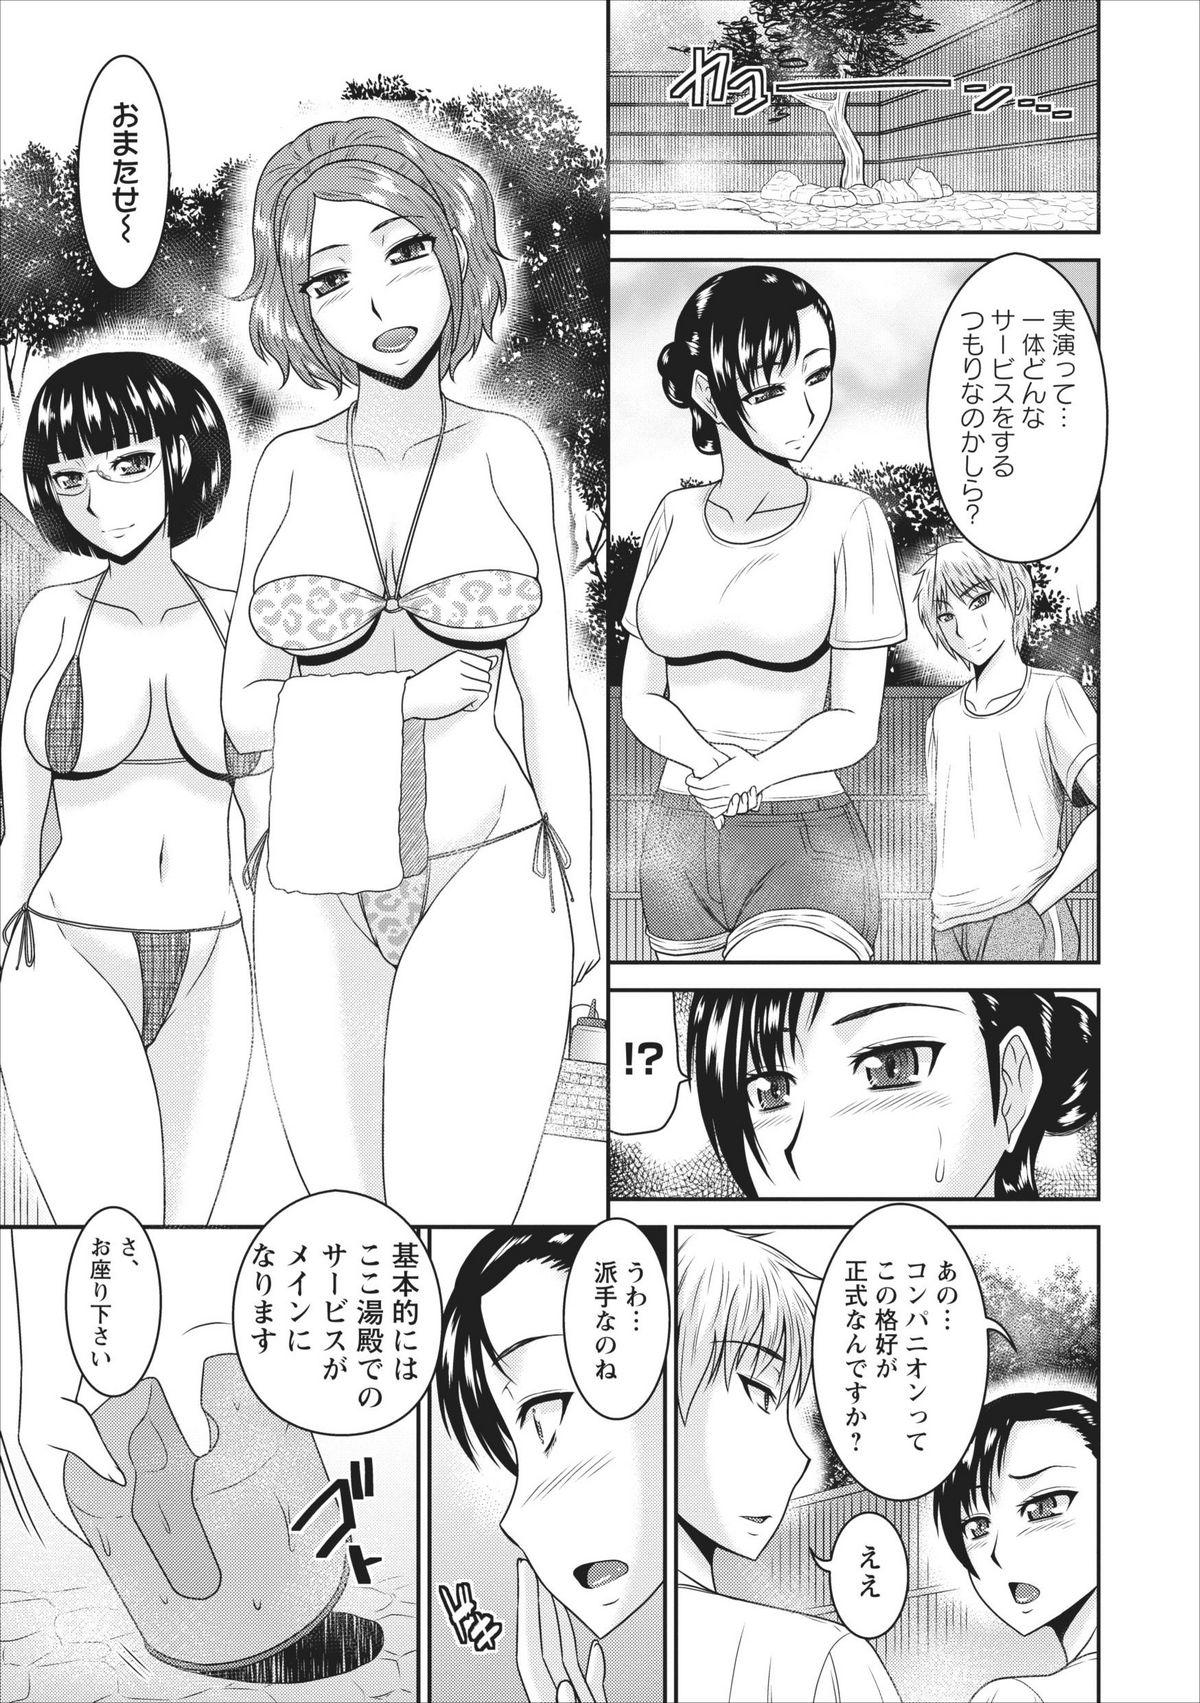 Bald Pussy Inbi na Yukemuri - Awa no Kuni Ryokan ch.1 Punheta - Page 11